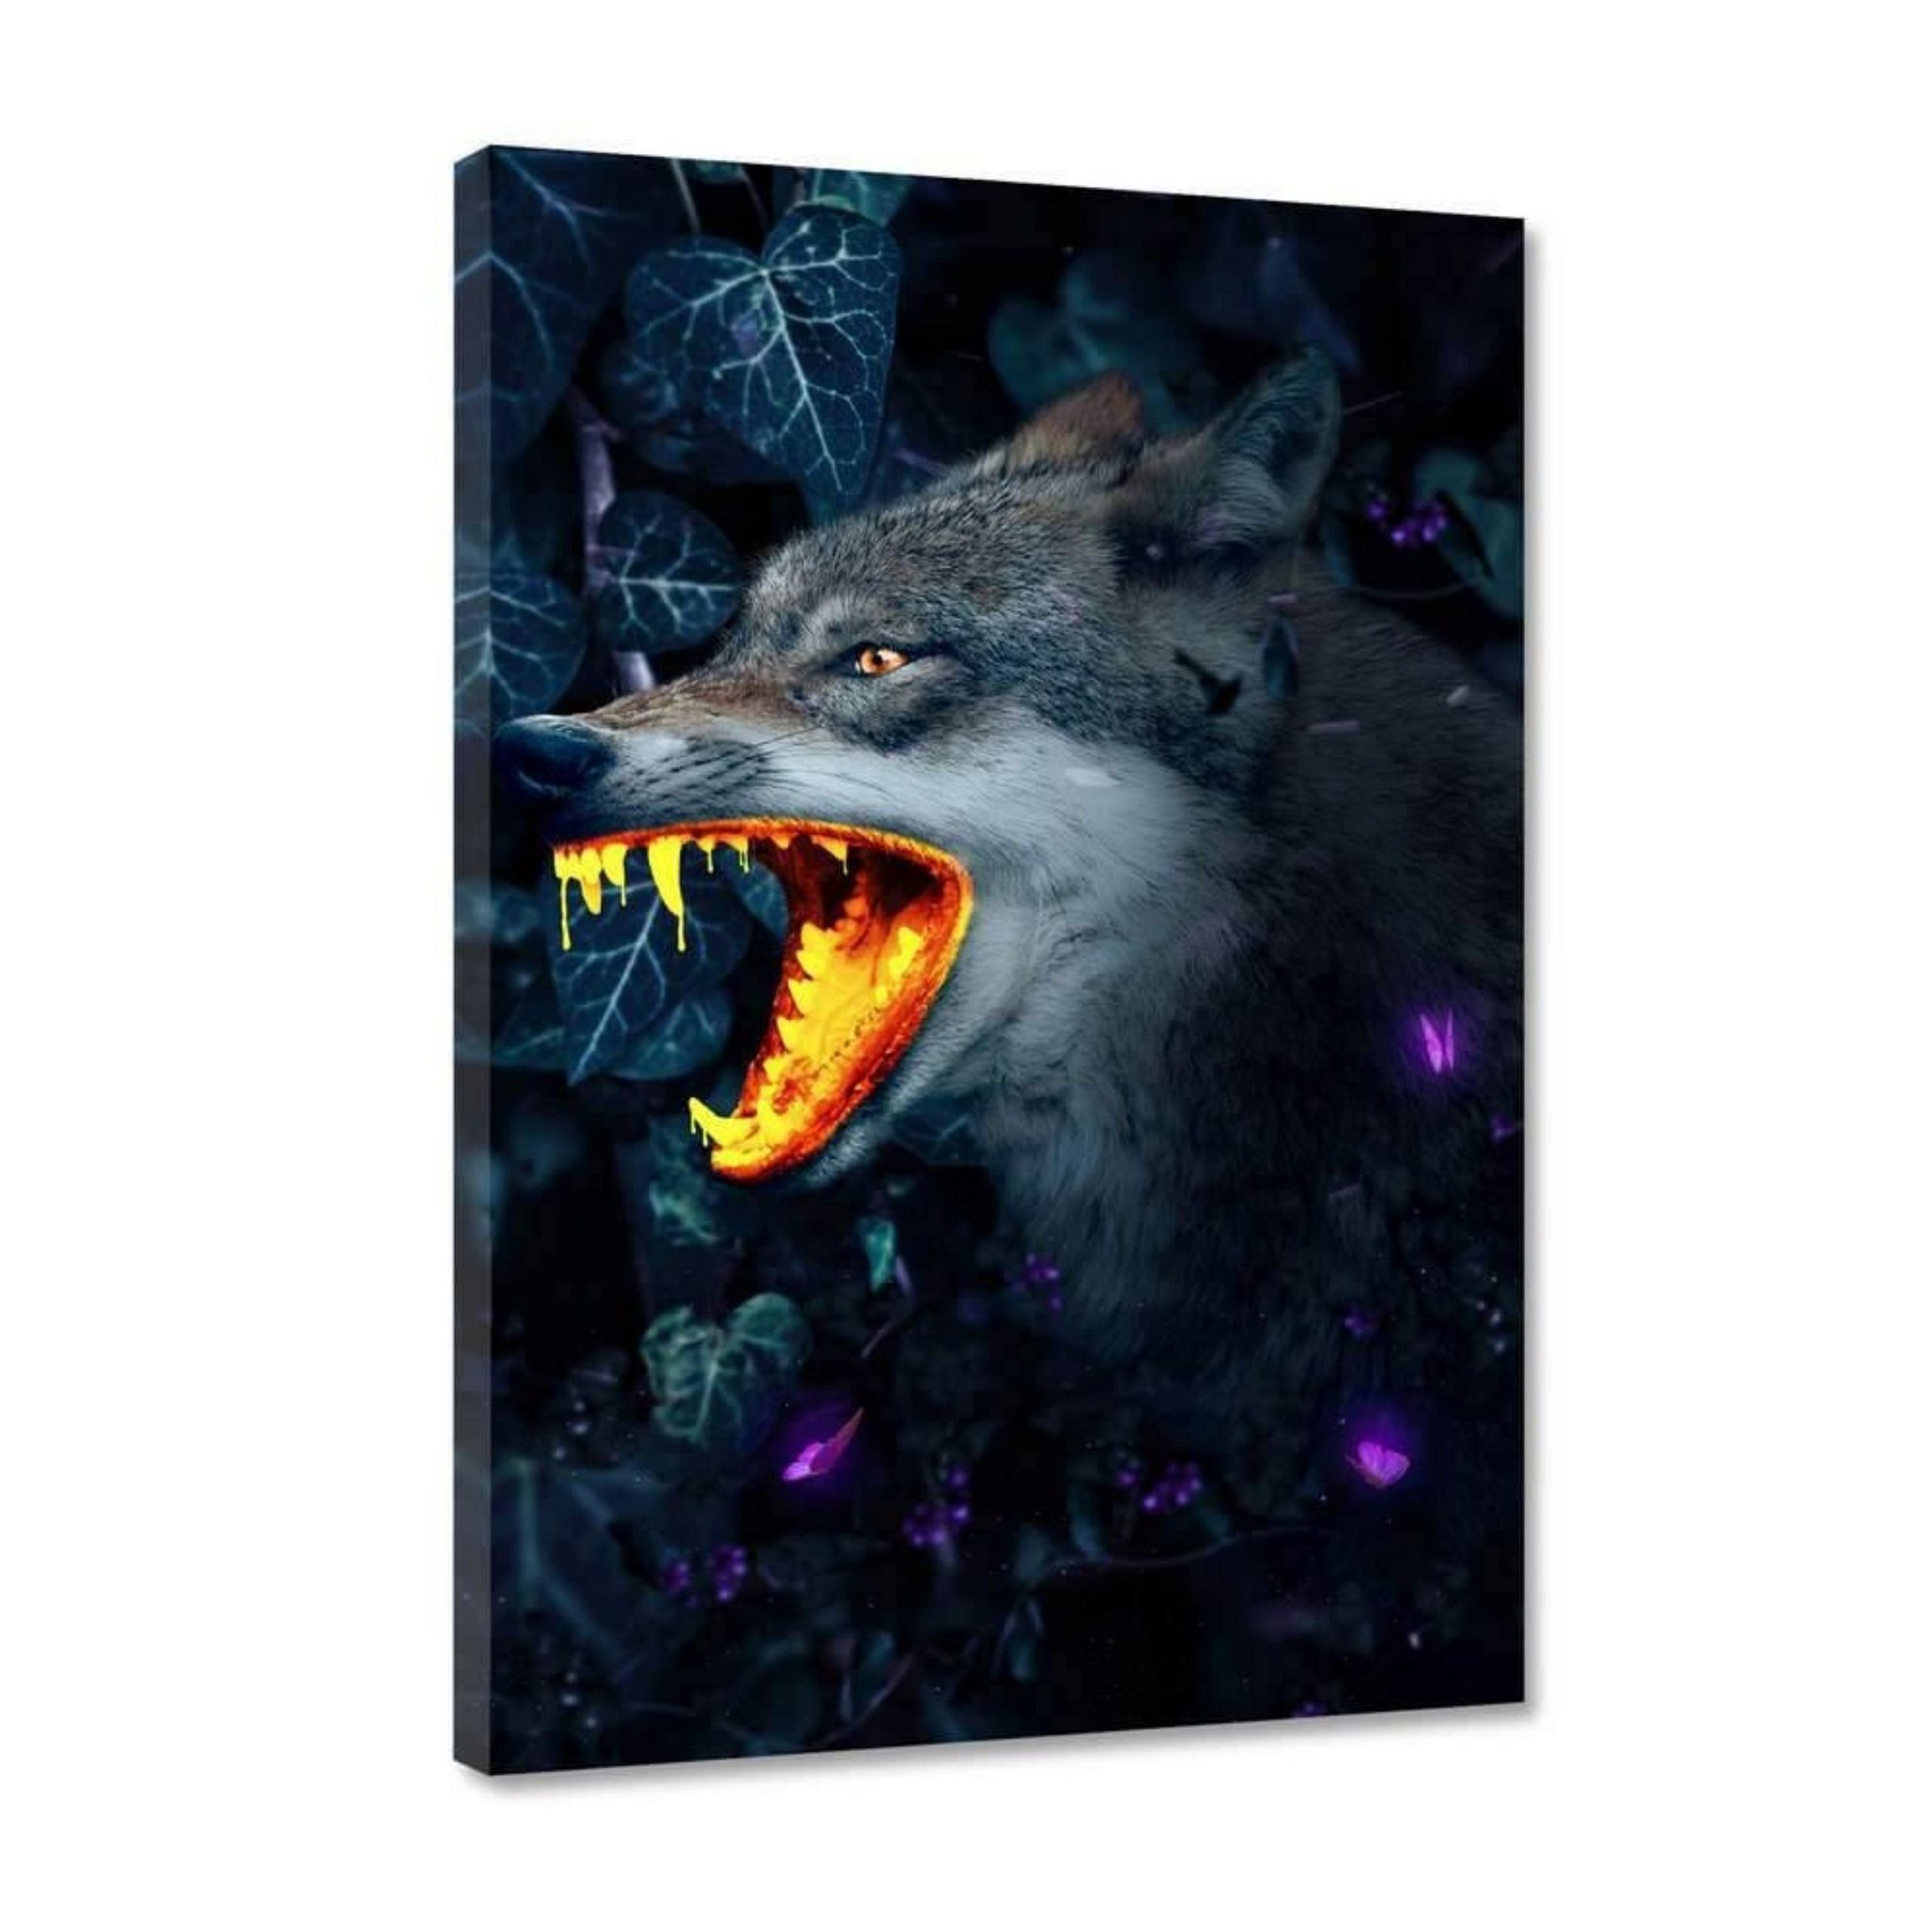 Hustling Sharks in verfügbar Größen - unterschiedlichen Leinwandbild XXL Wolf" als Wolf-Bild Leinwandbild Tierbild, 7 "Goldener exklusives